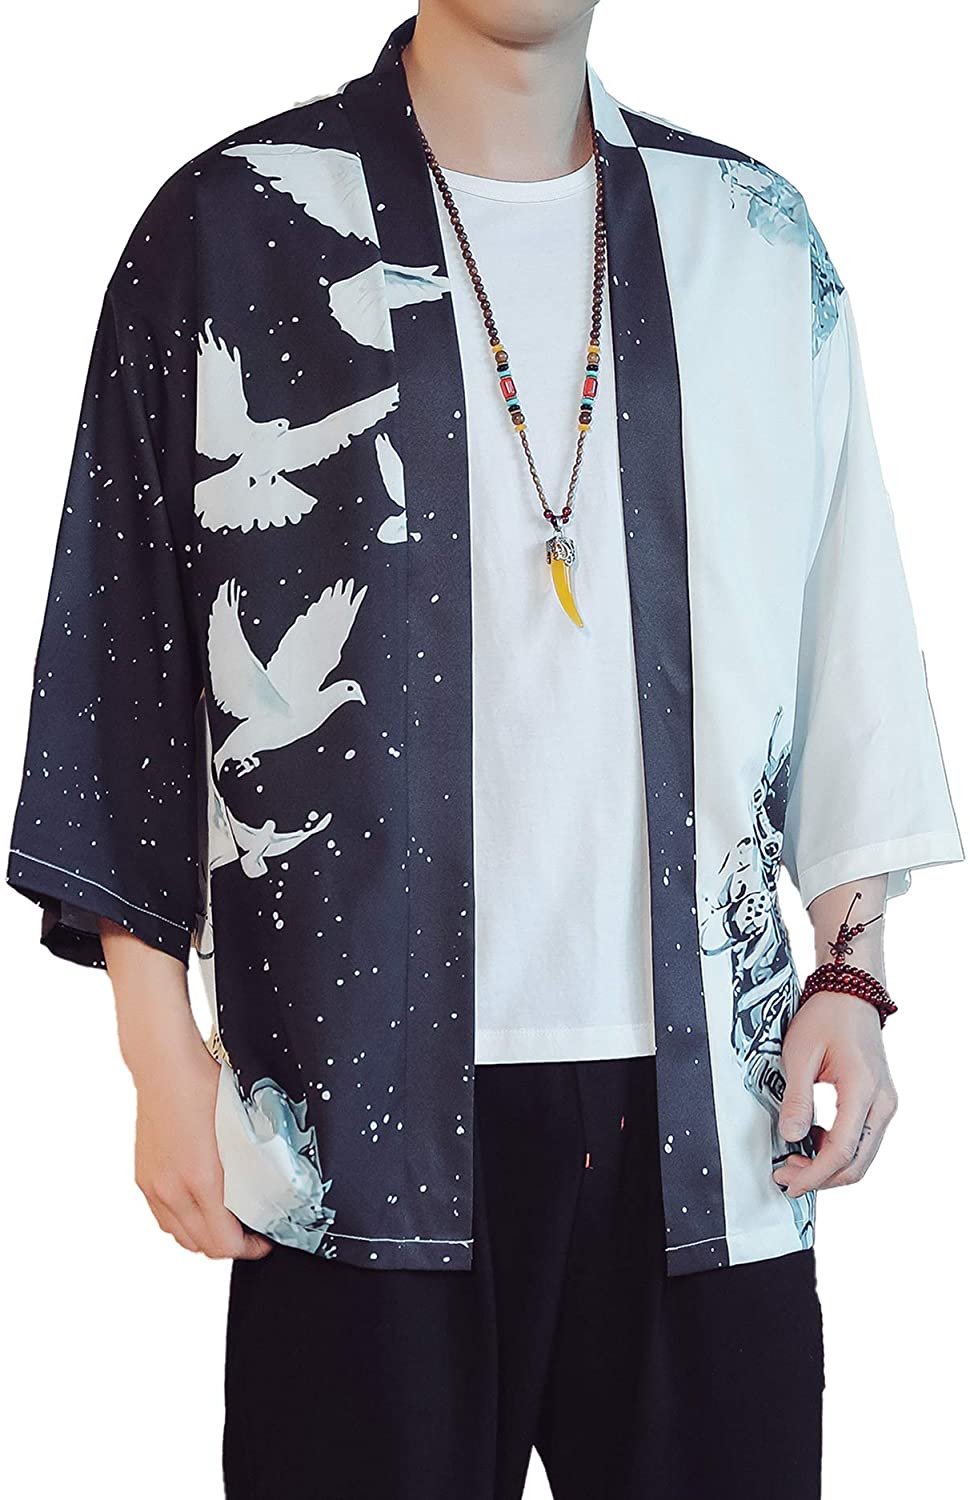 Curshimer Men Japanese Kimono Cardigan Jacket Casual Open Front